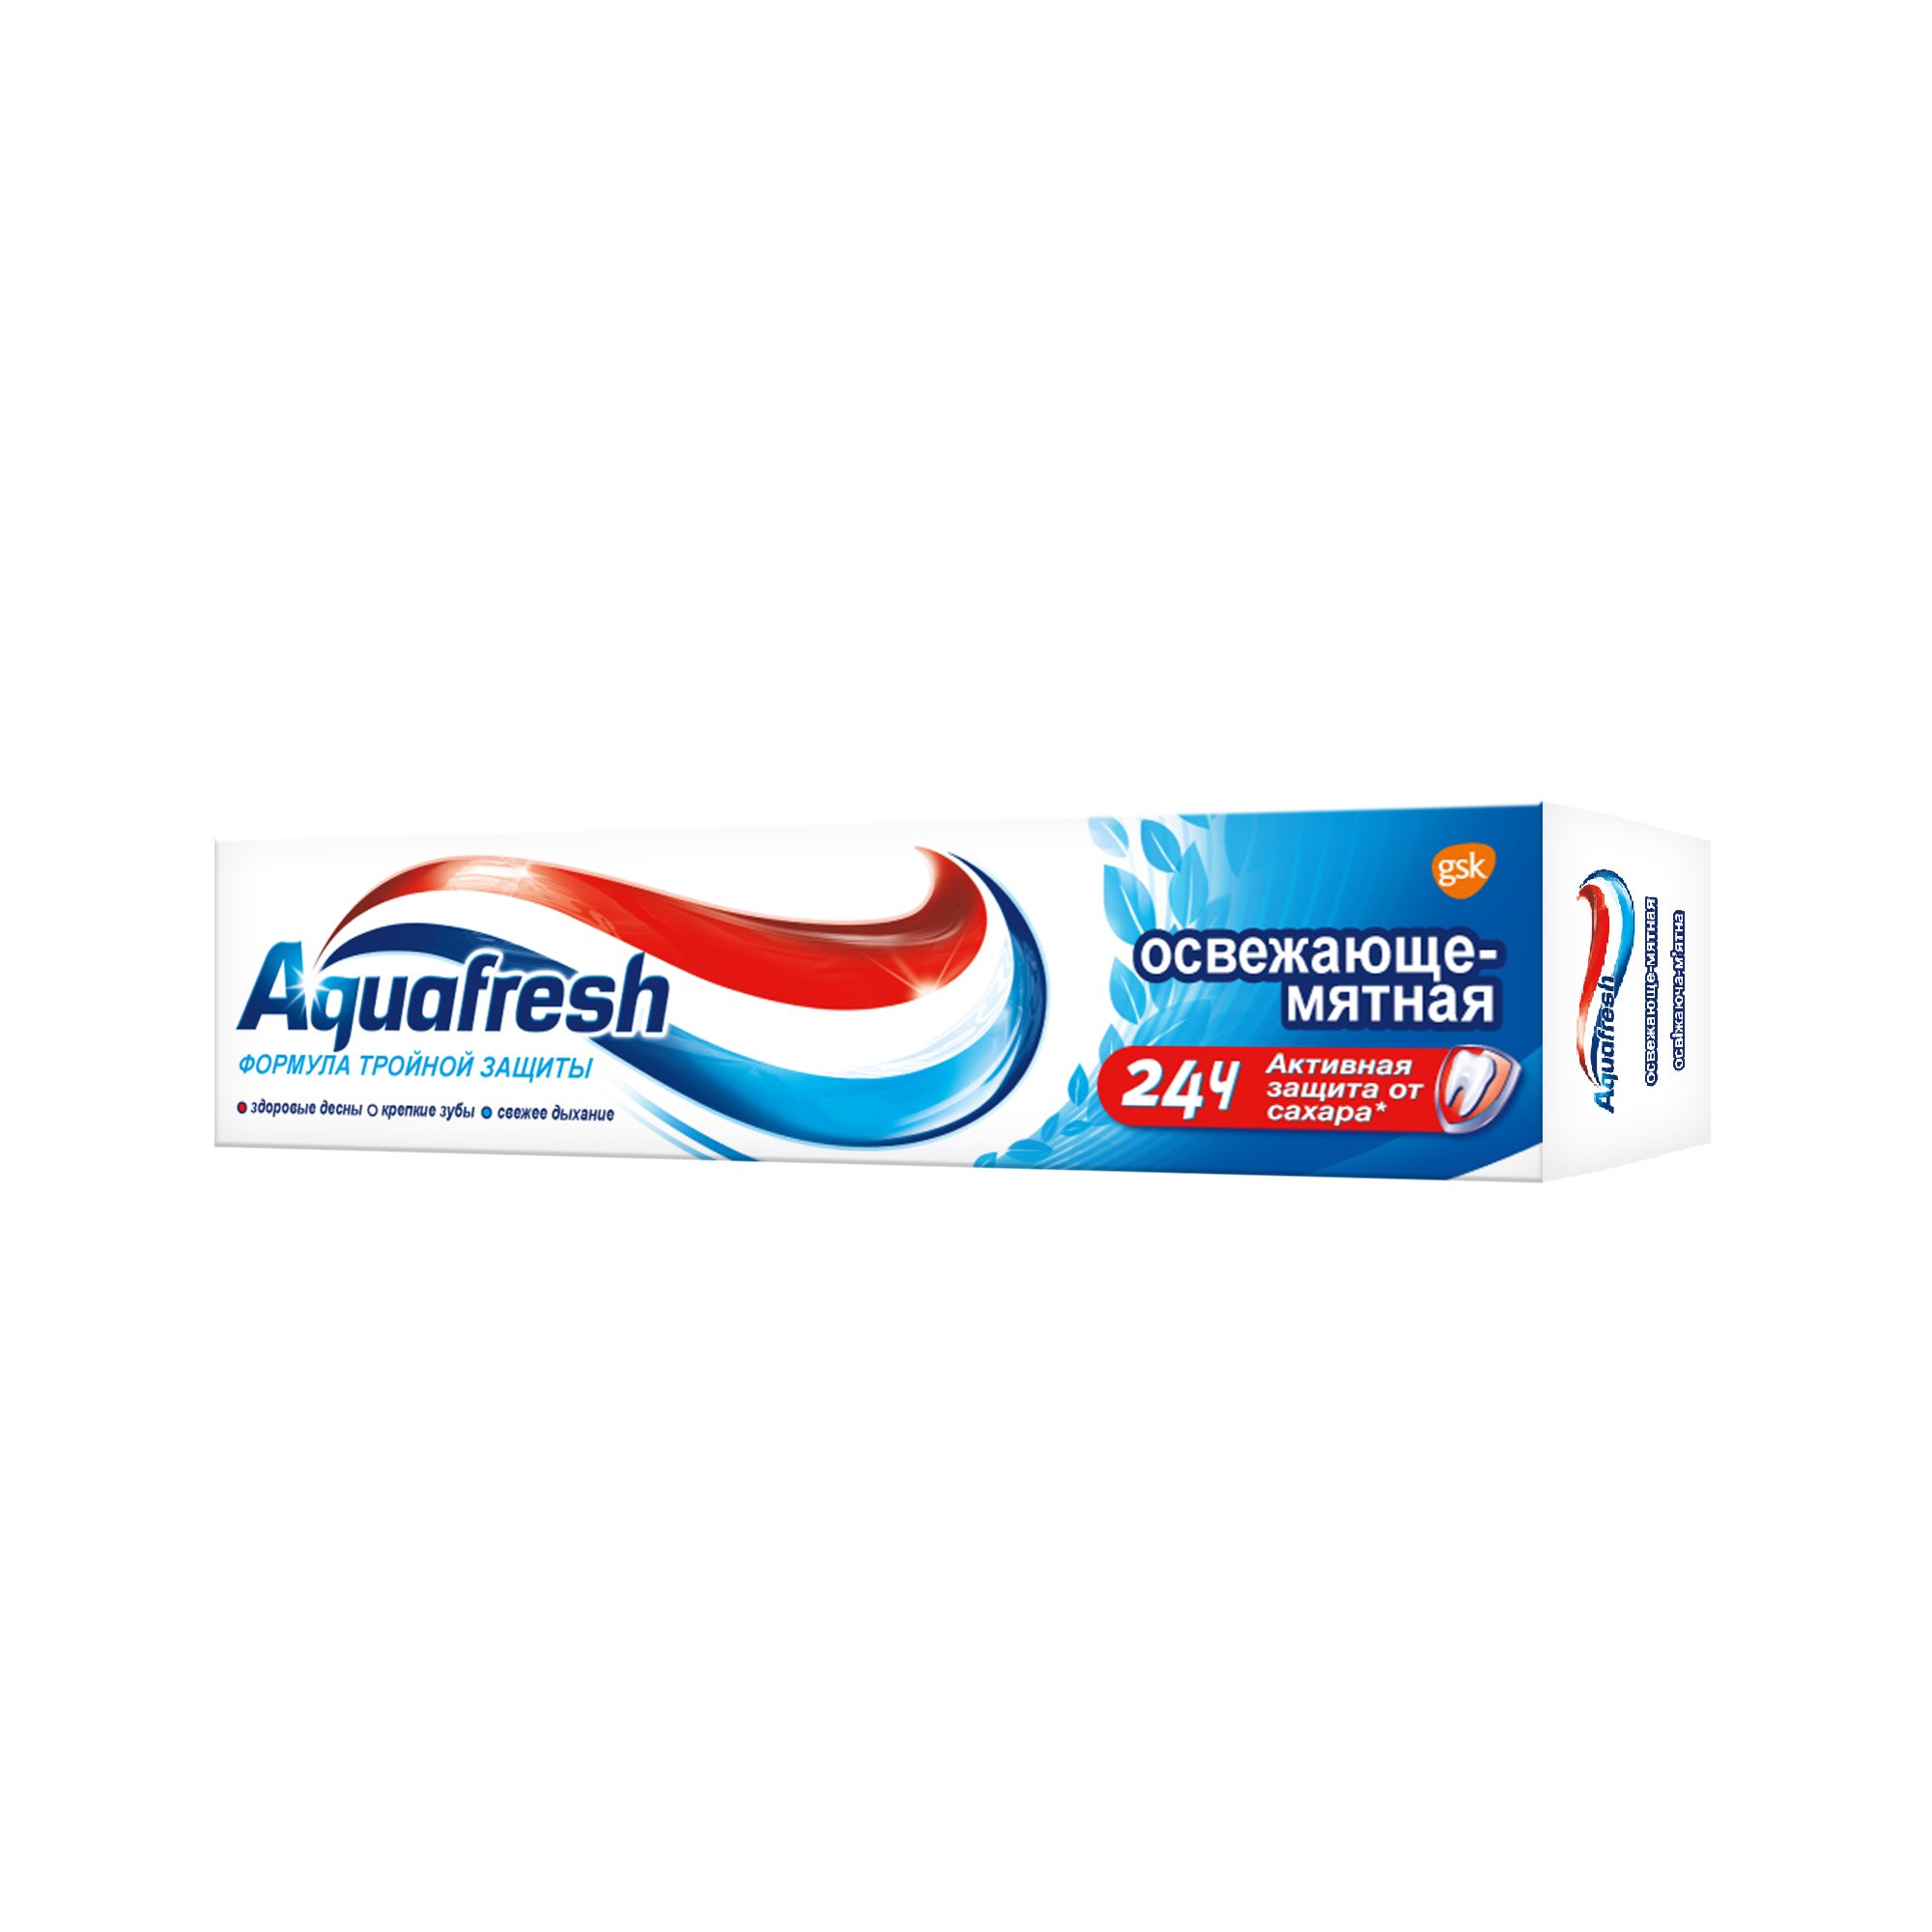 Зубна паста Aquafresh Освіжаюче-м'ятна 50 мл - фото 4